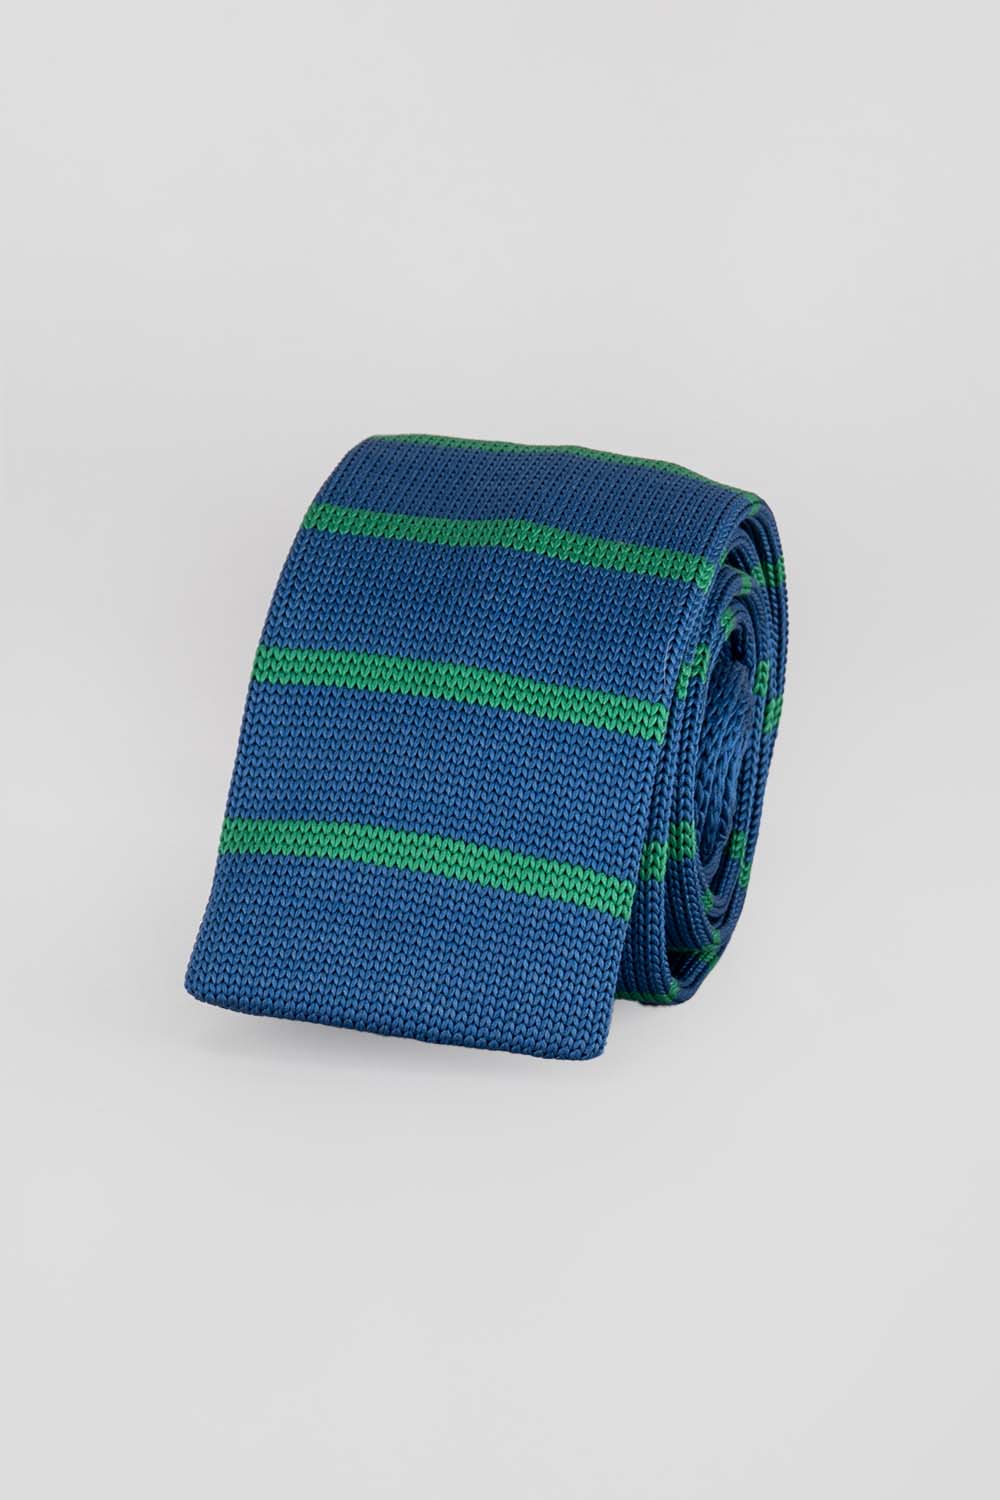 Jack Teal/Green Striped Men's Knited Tie Oswin Hyde